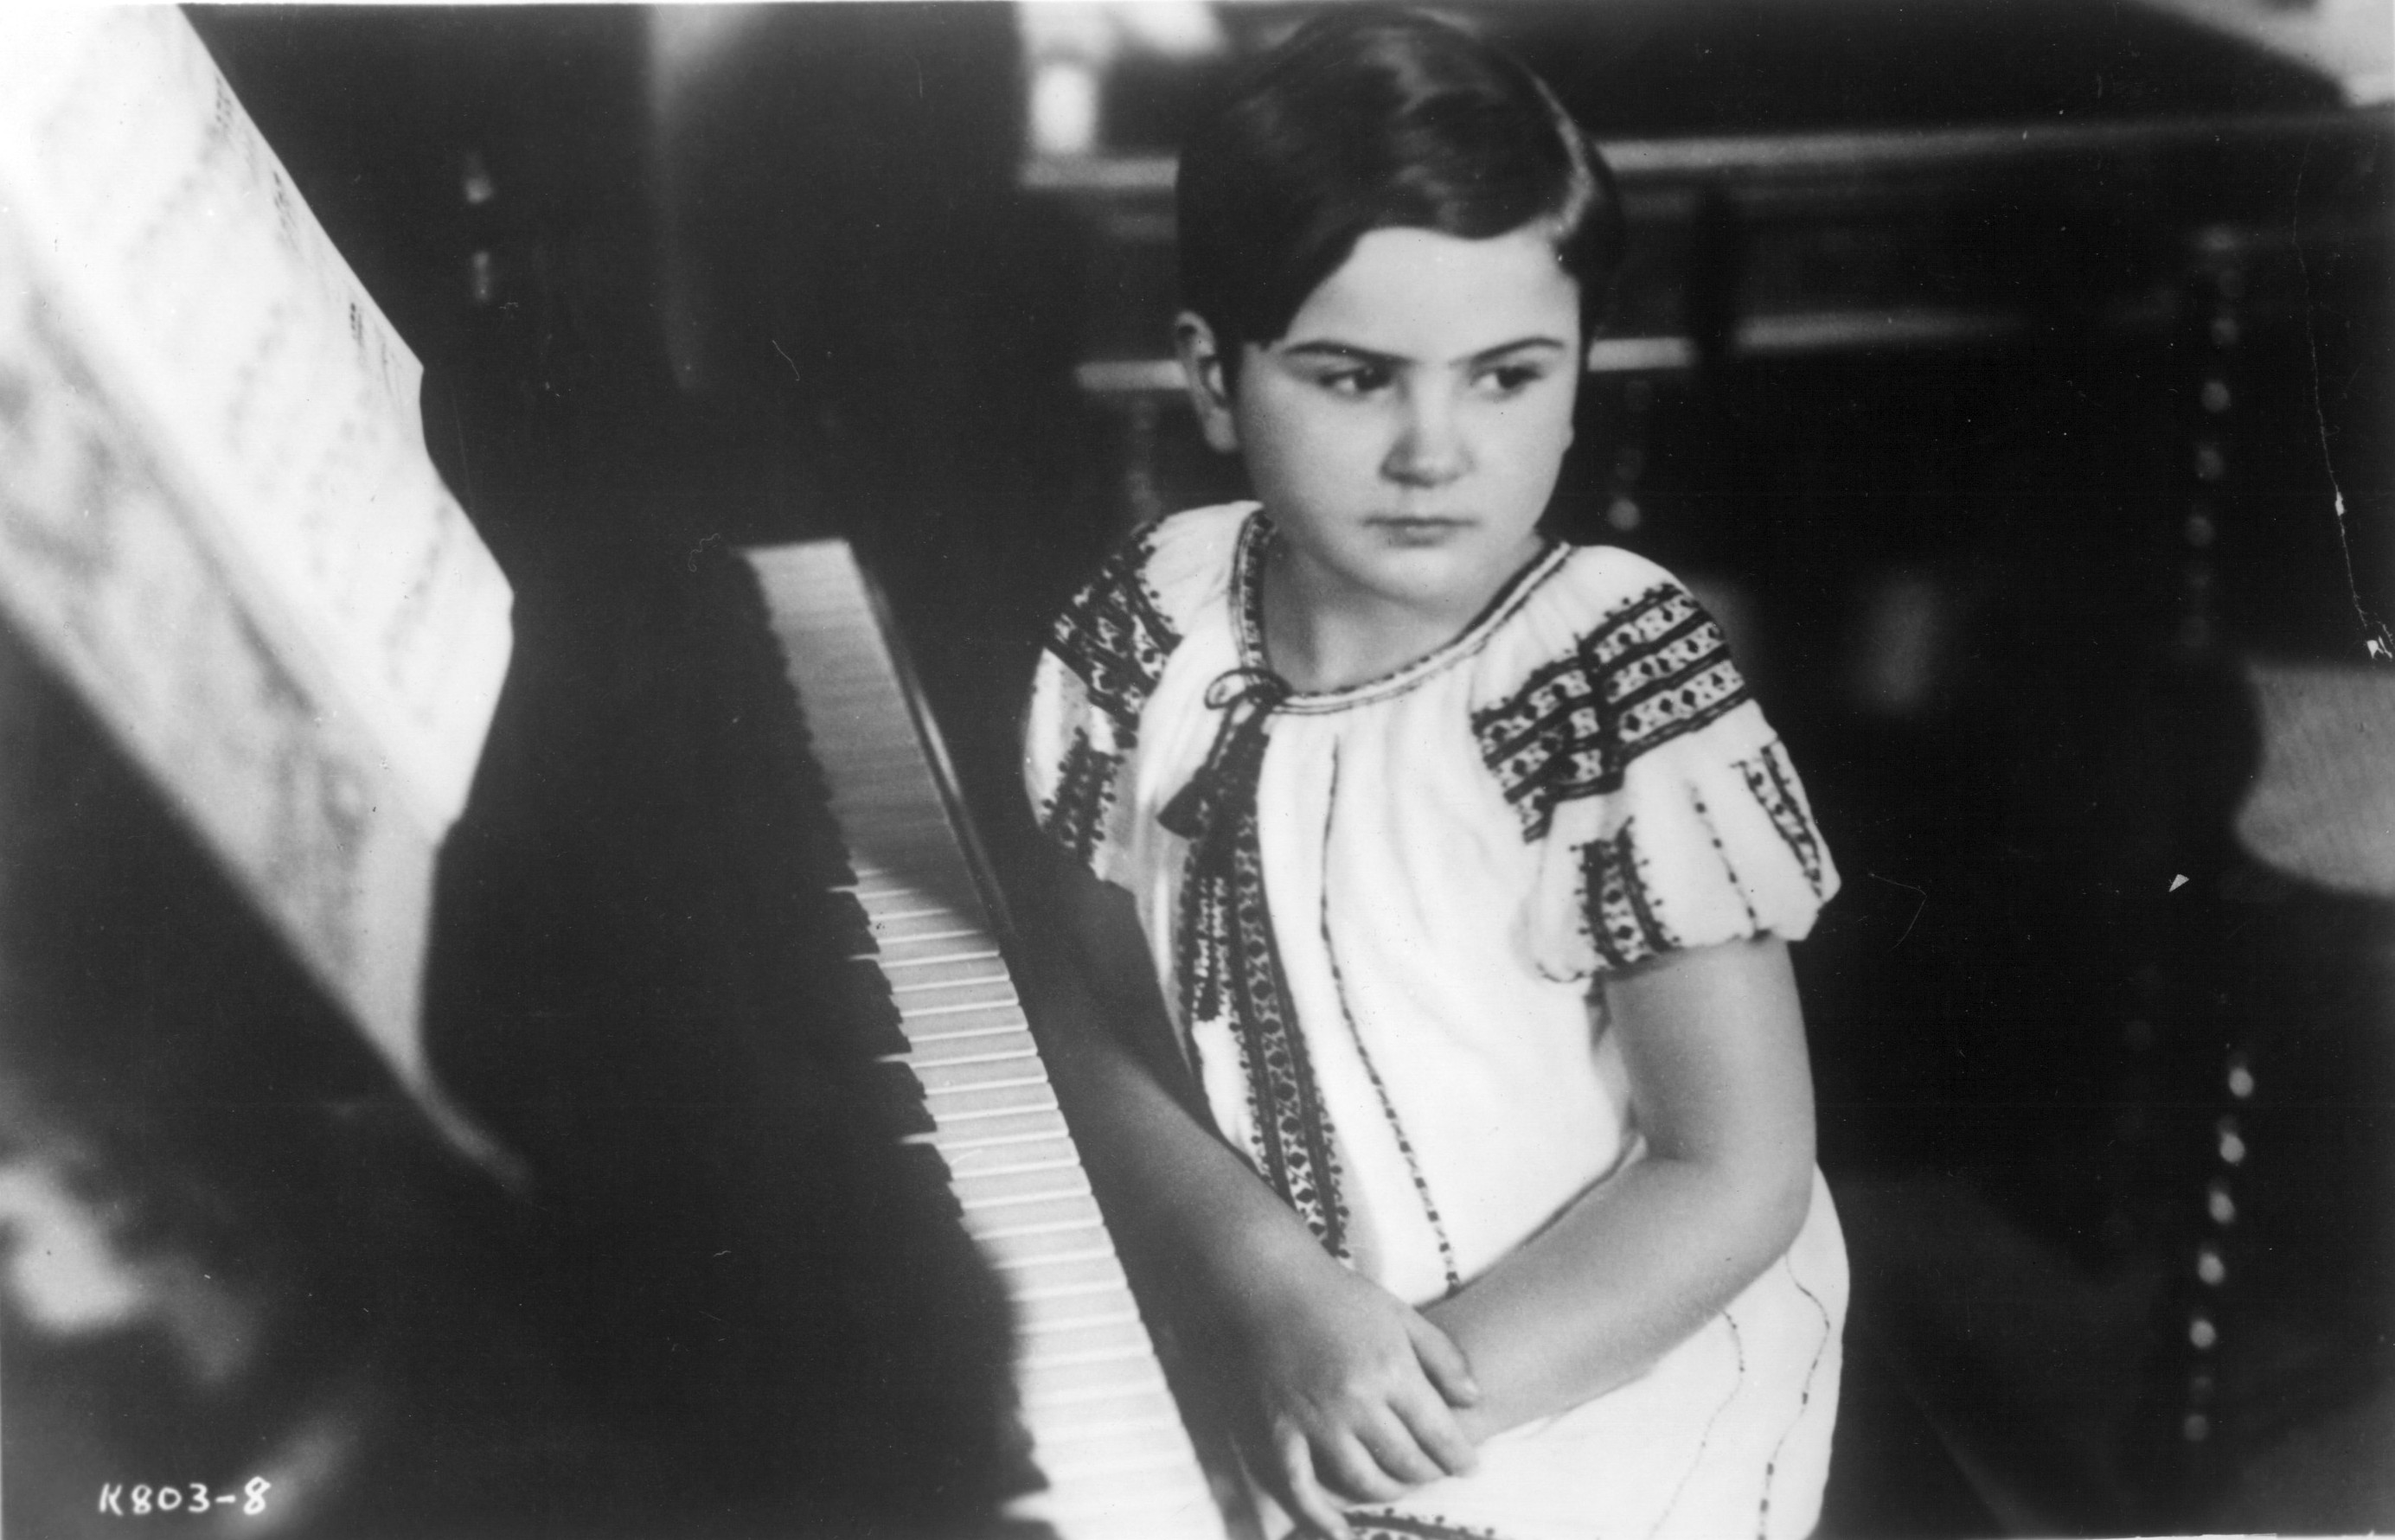 Ruth at age 8